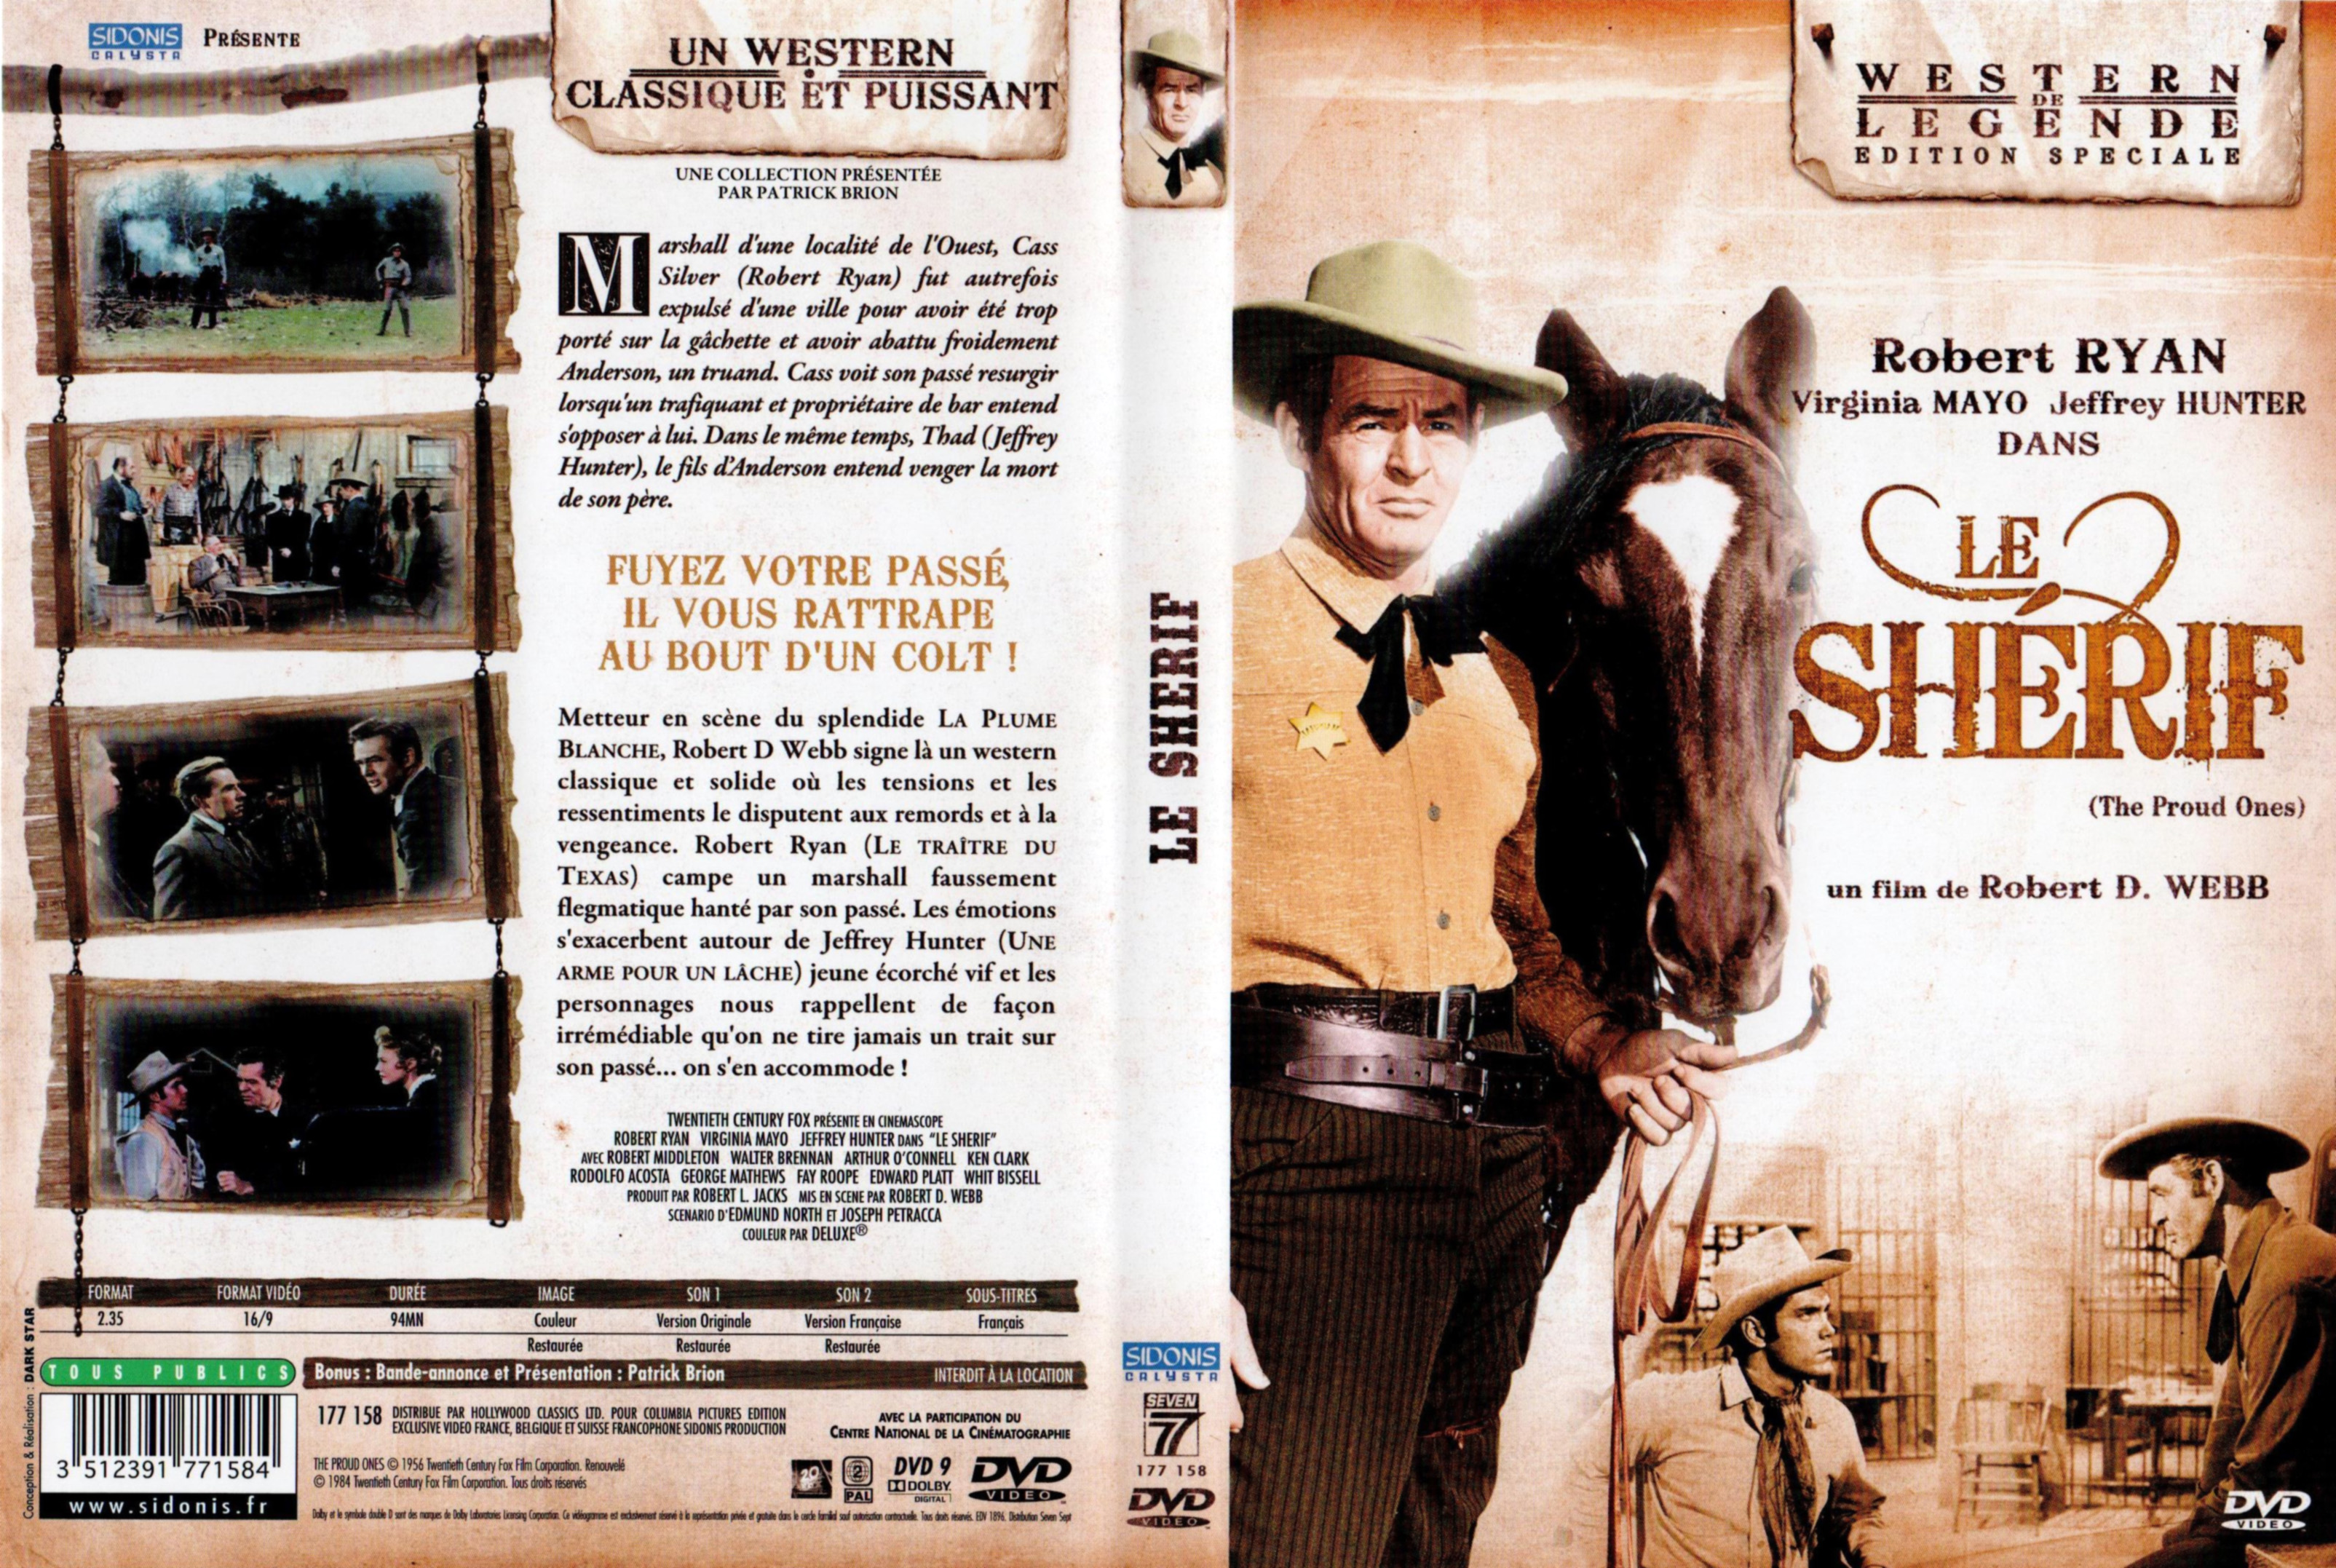 Jaquette DVD Le shrif